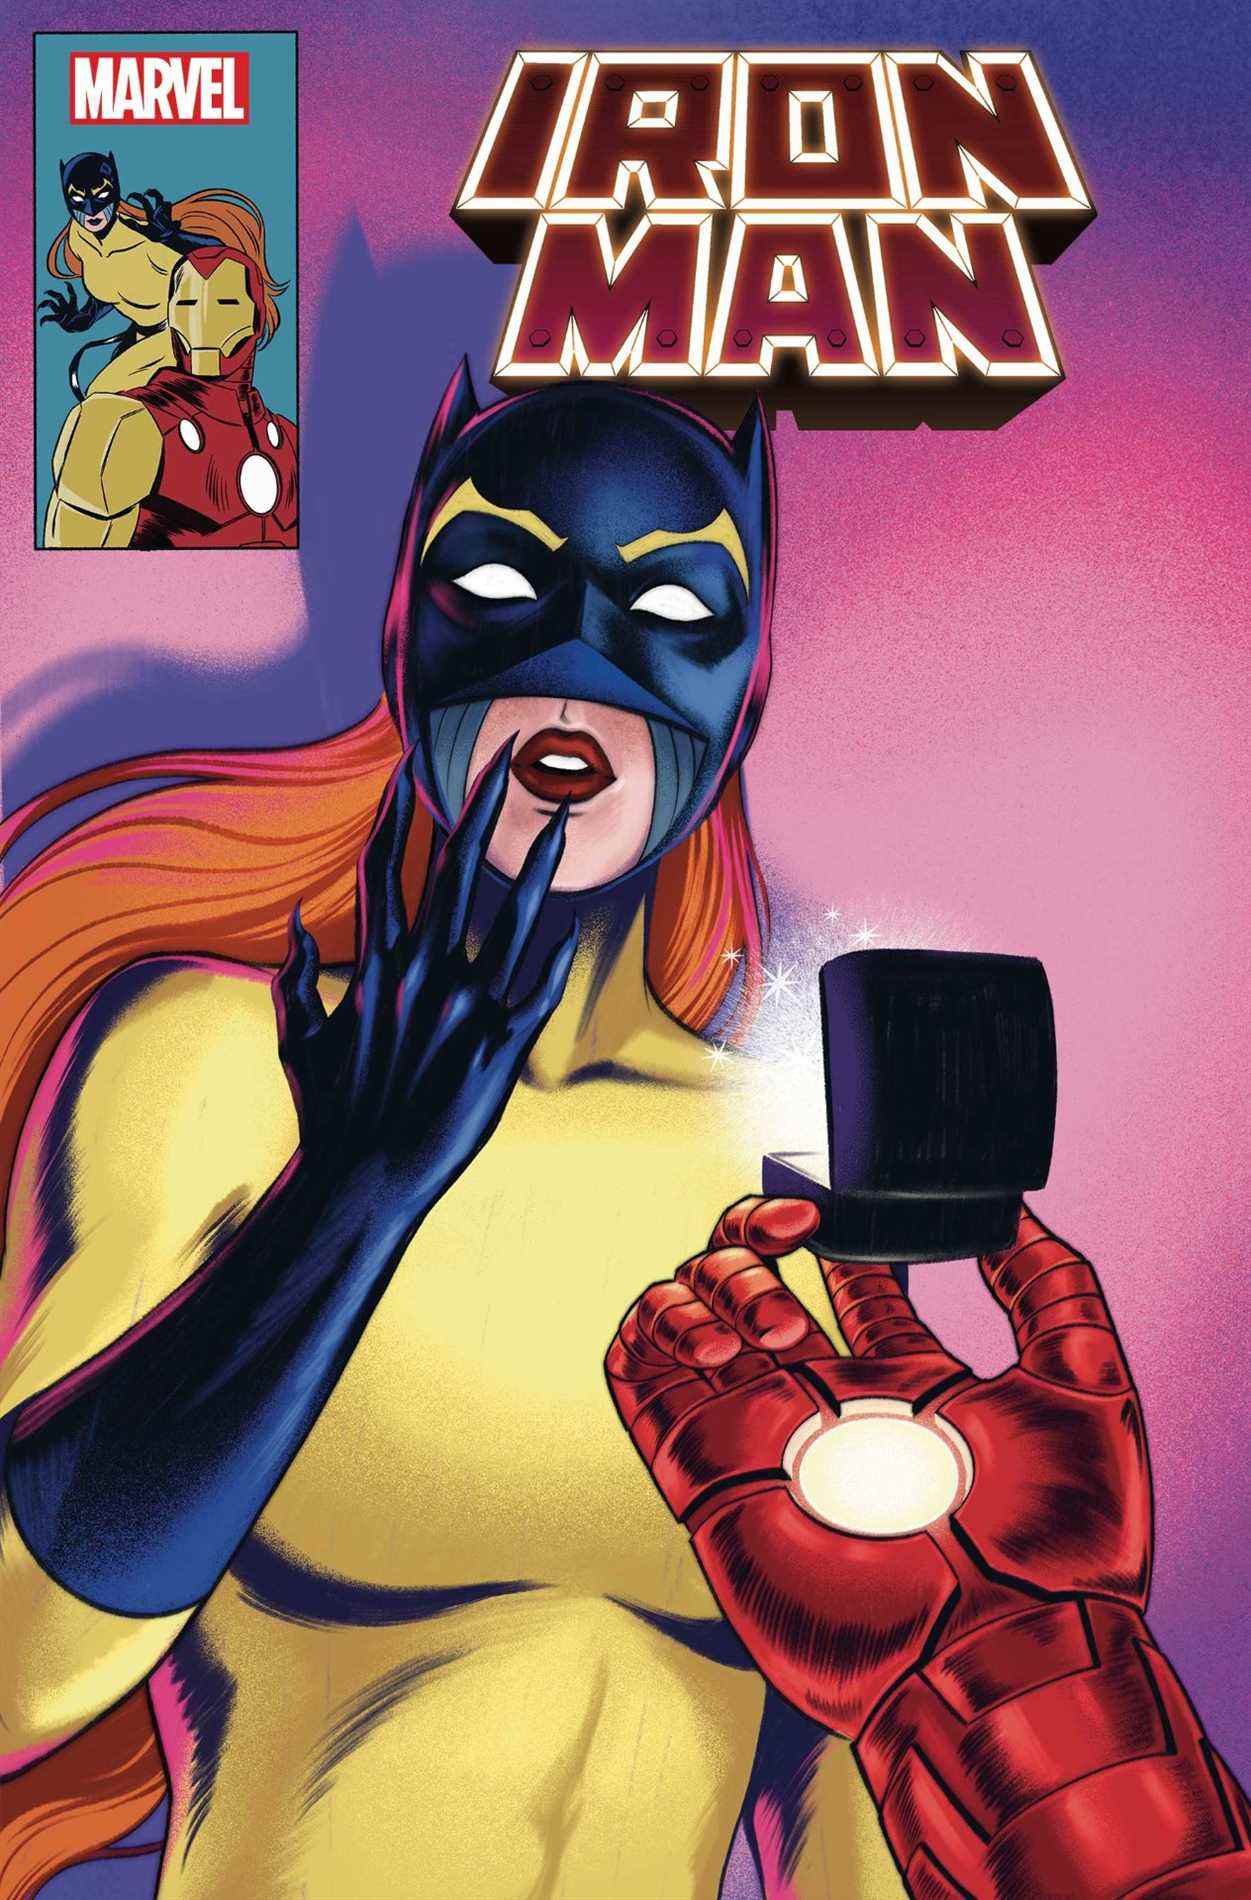 Couverture de la variante Iron Man # 20 par Betsy Cola